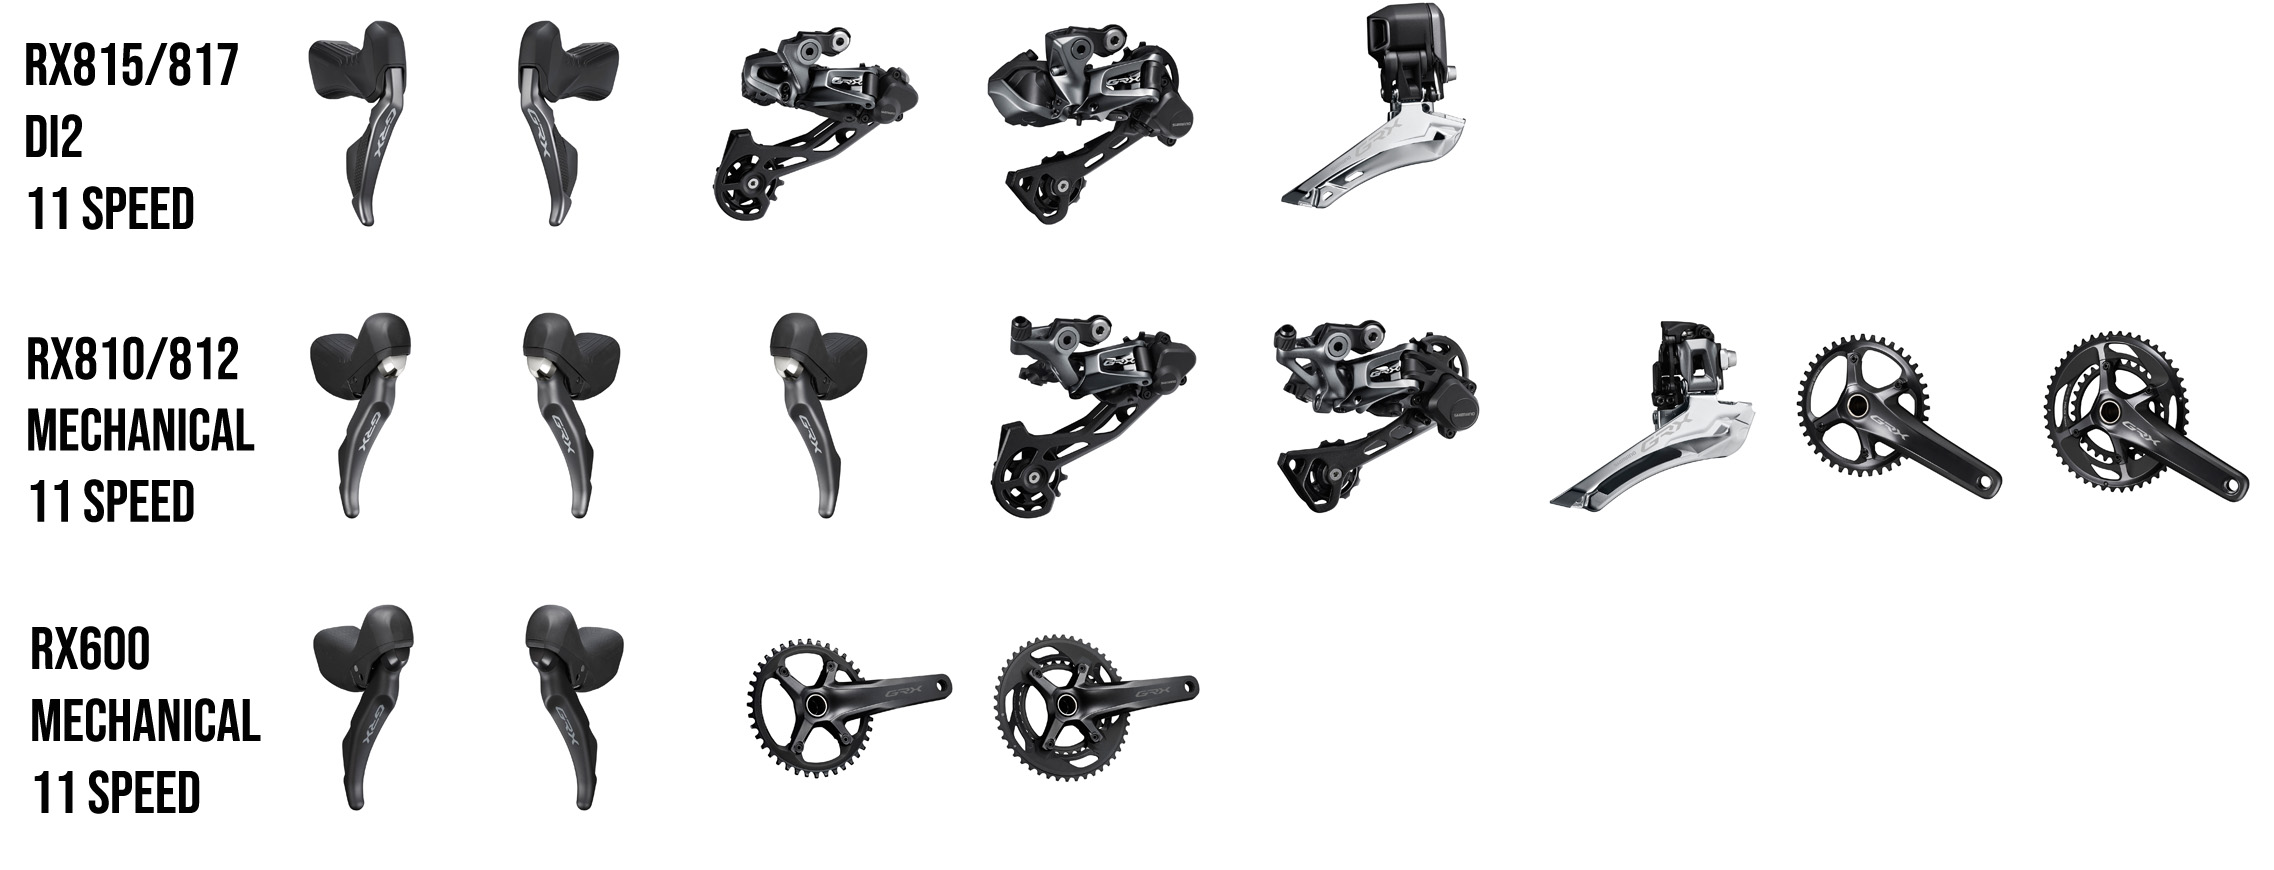 Shimano GRX mechanical di2 product range gearing